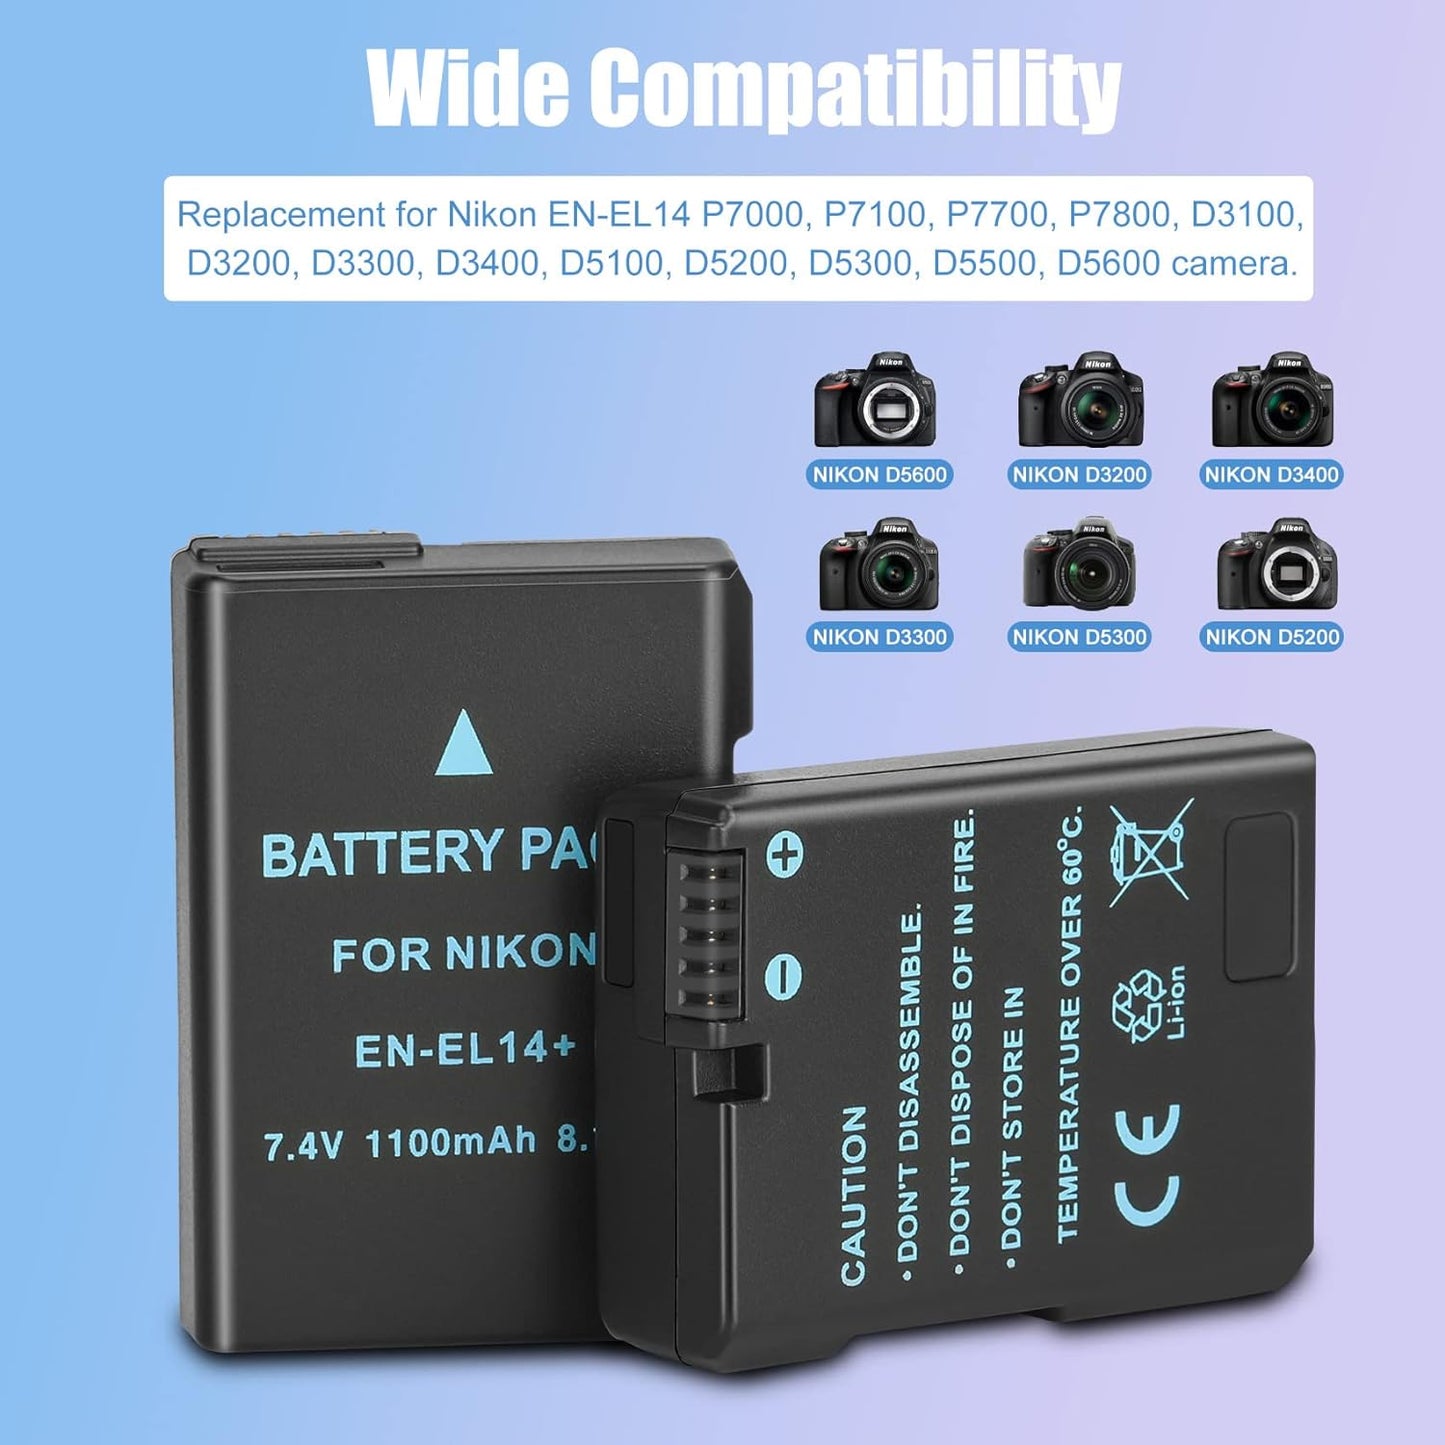 2-Packs JYJZPB EN-EL14 EN-EL14a Replacement Cameras Battery Dual USB Charger Set Compatible for Nikon D5600, D3200, D3500, D3300, D3400, D3100, D5100, D5200, D5300, DF Coolpix P7000 P7100 P7700 P7800